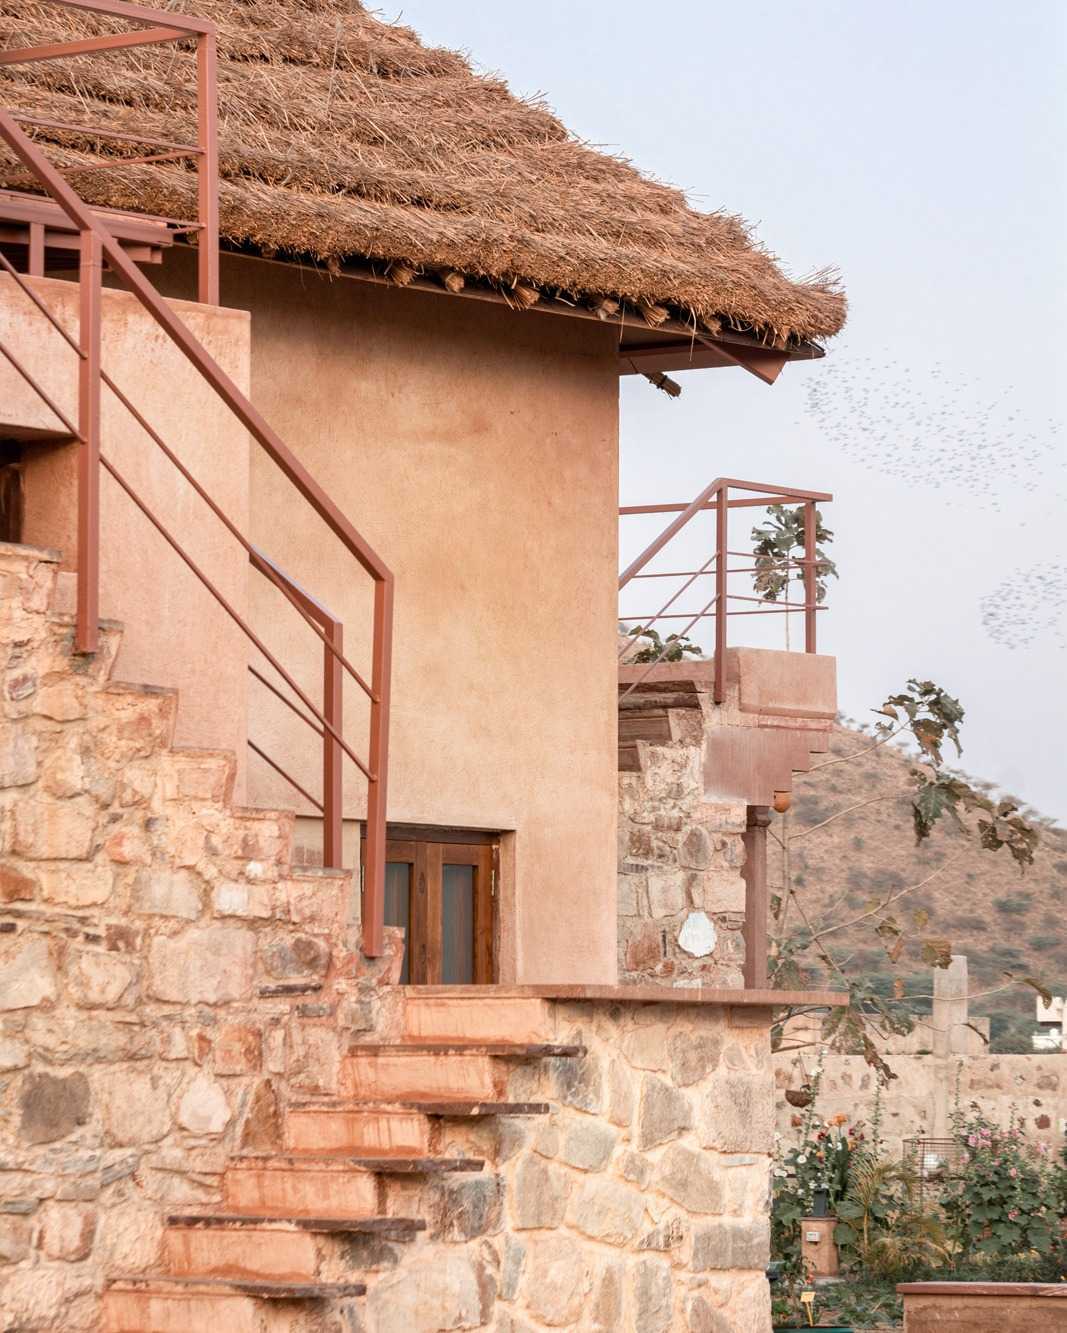 Rumah lumpur di Alwar, Rajasthan menggunakan atap jerami agar rumah tetap sejuk di musim panas karena jerami bisa bernapas